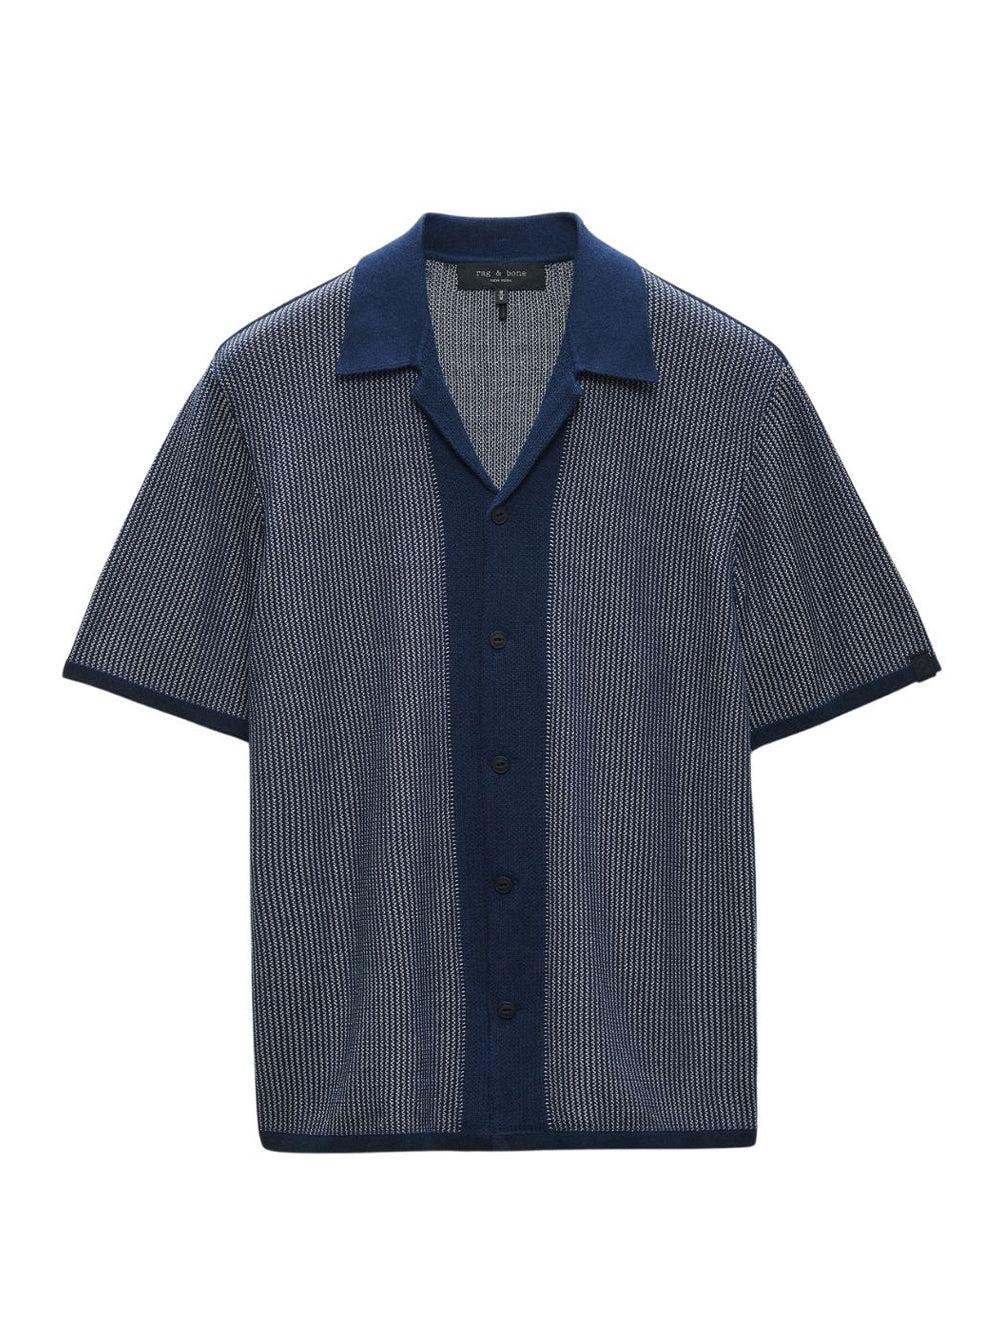 Harvey Knit Camp Shirt (Sage)